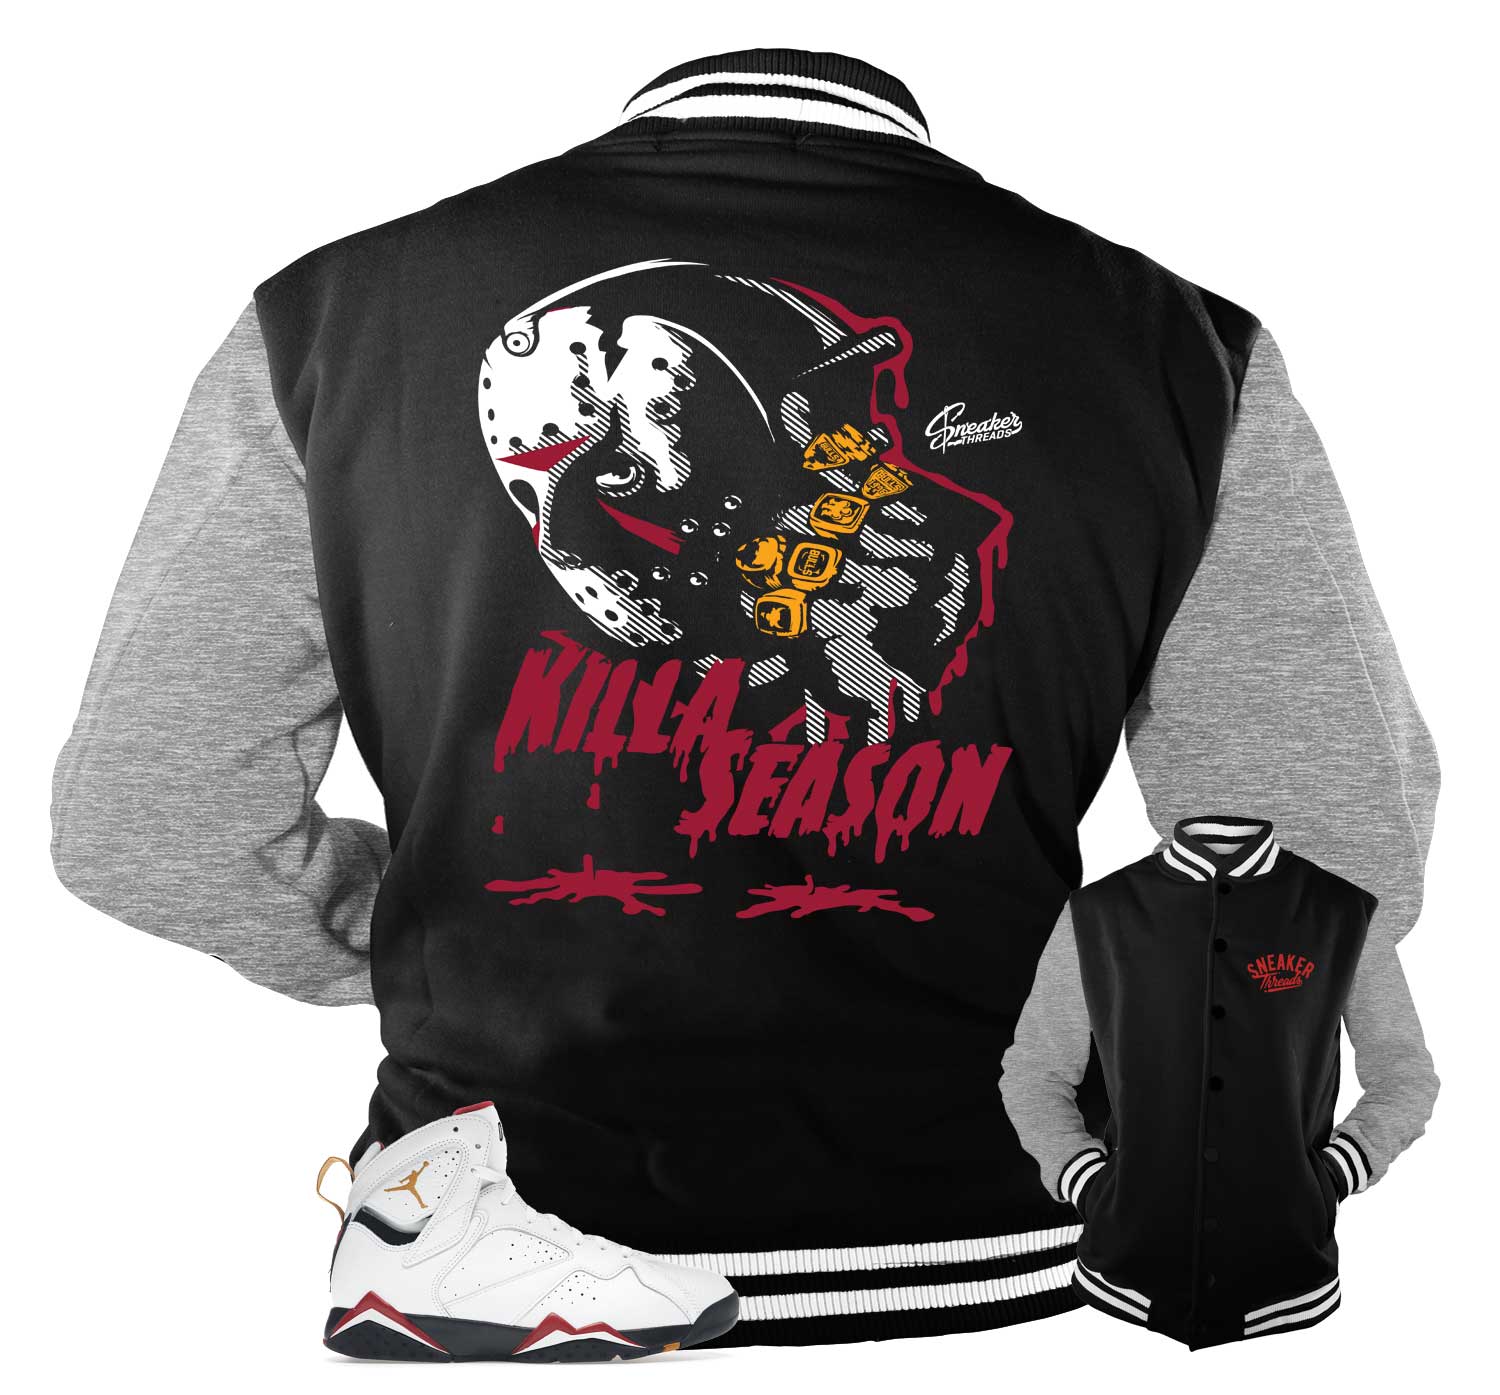 Retro 7 Cardinal Jacket - Killa Season - Black